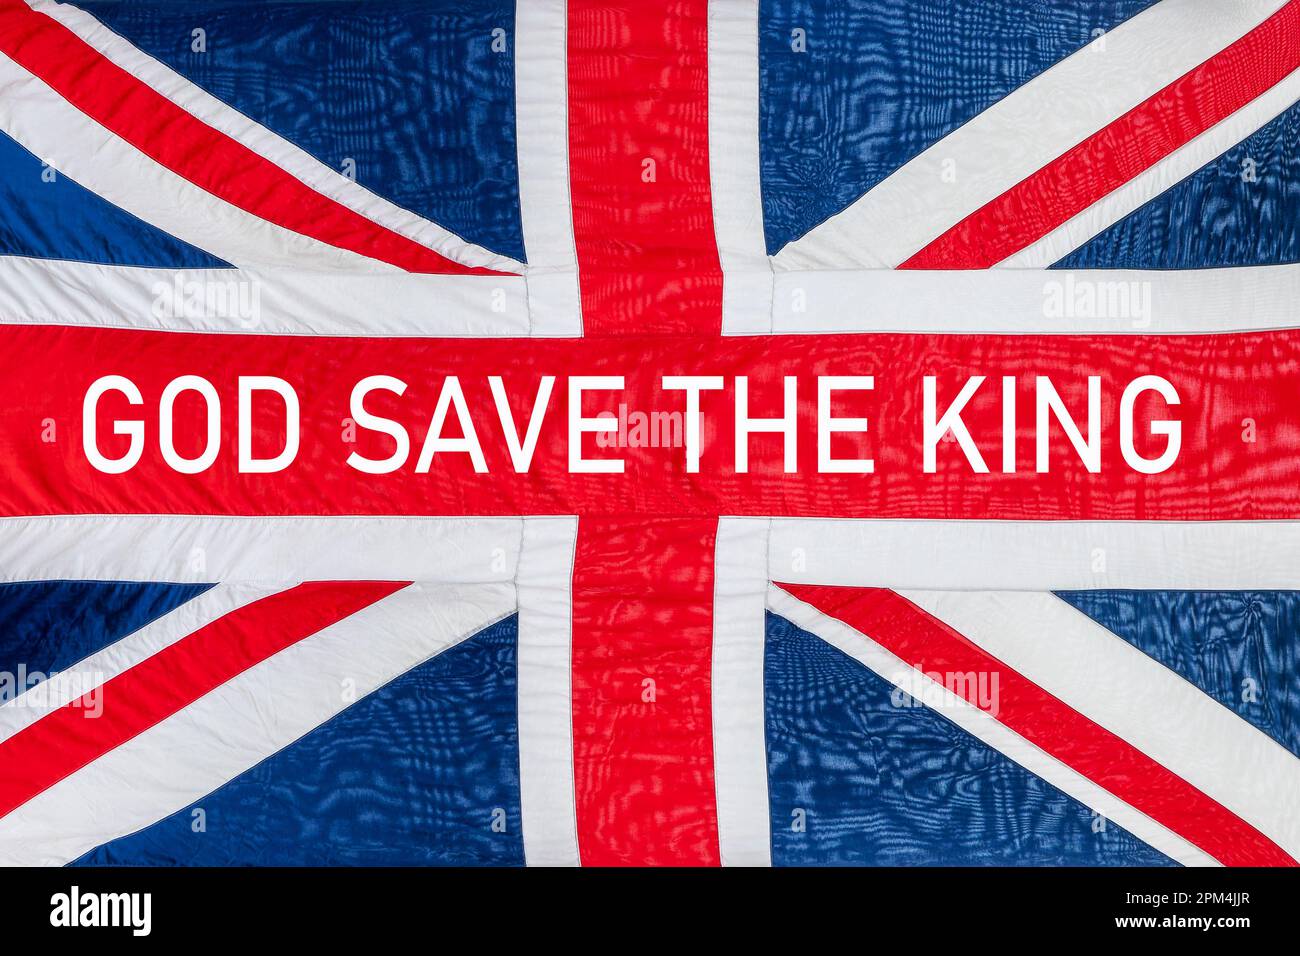 God saves the king written a british UK flag, Union Jack background, king Charles coronation celebration Stock Photo